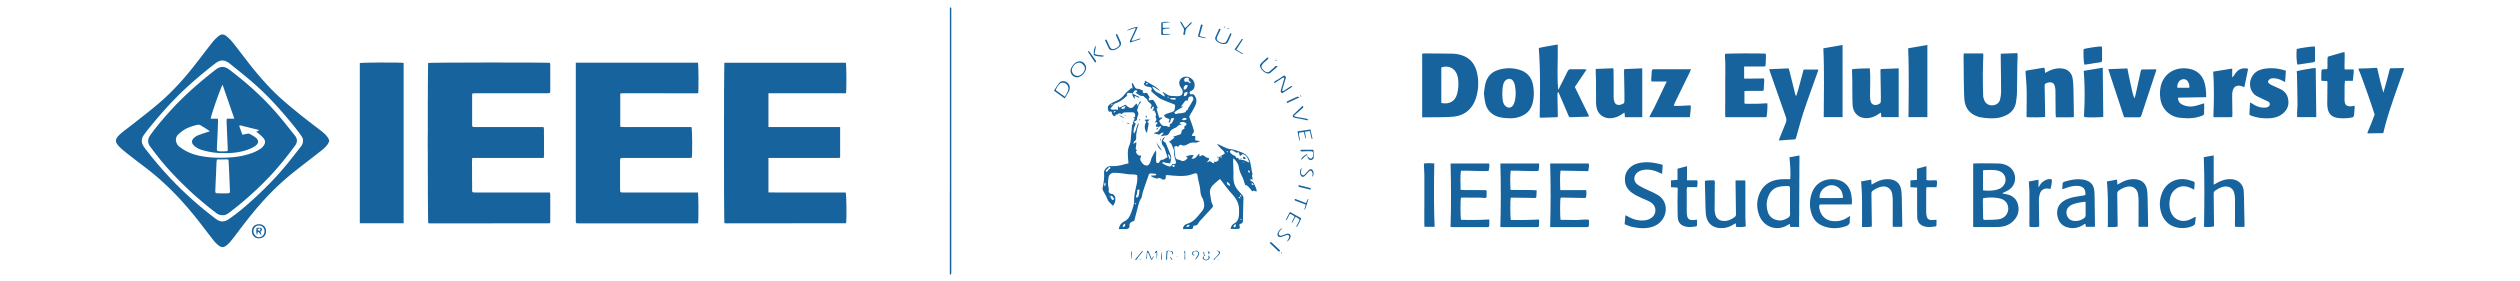 IEEE Dokuz Eylul University Student Branch